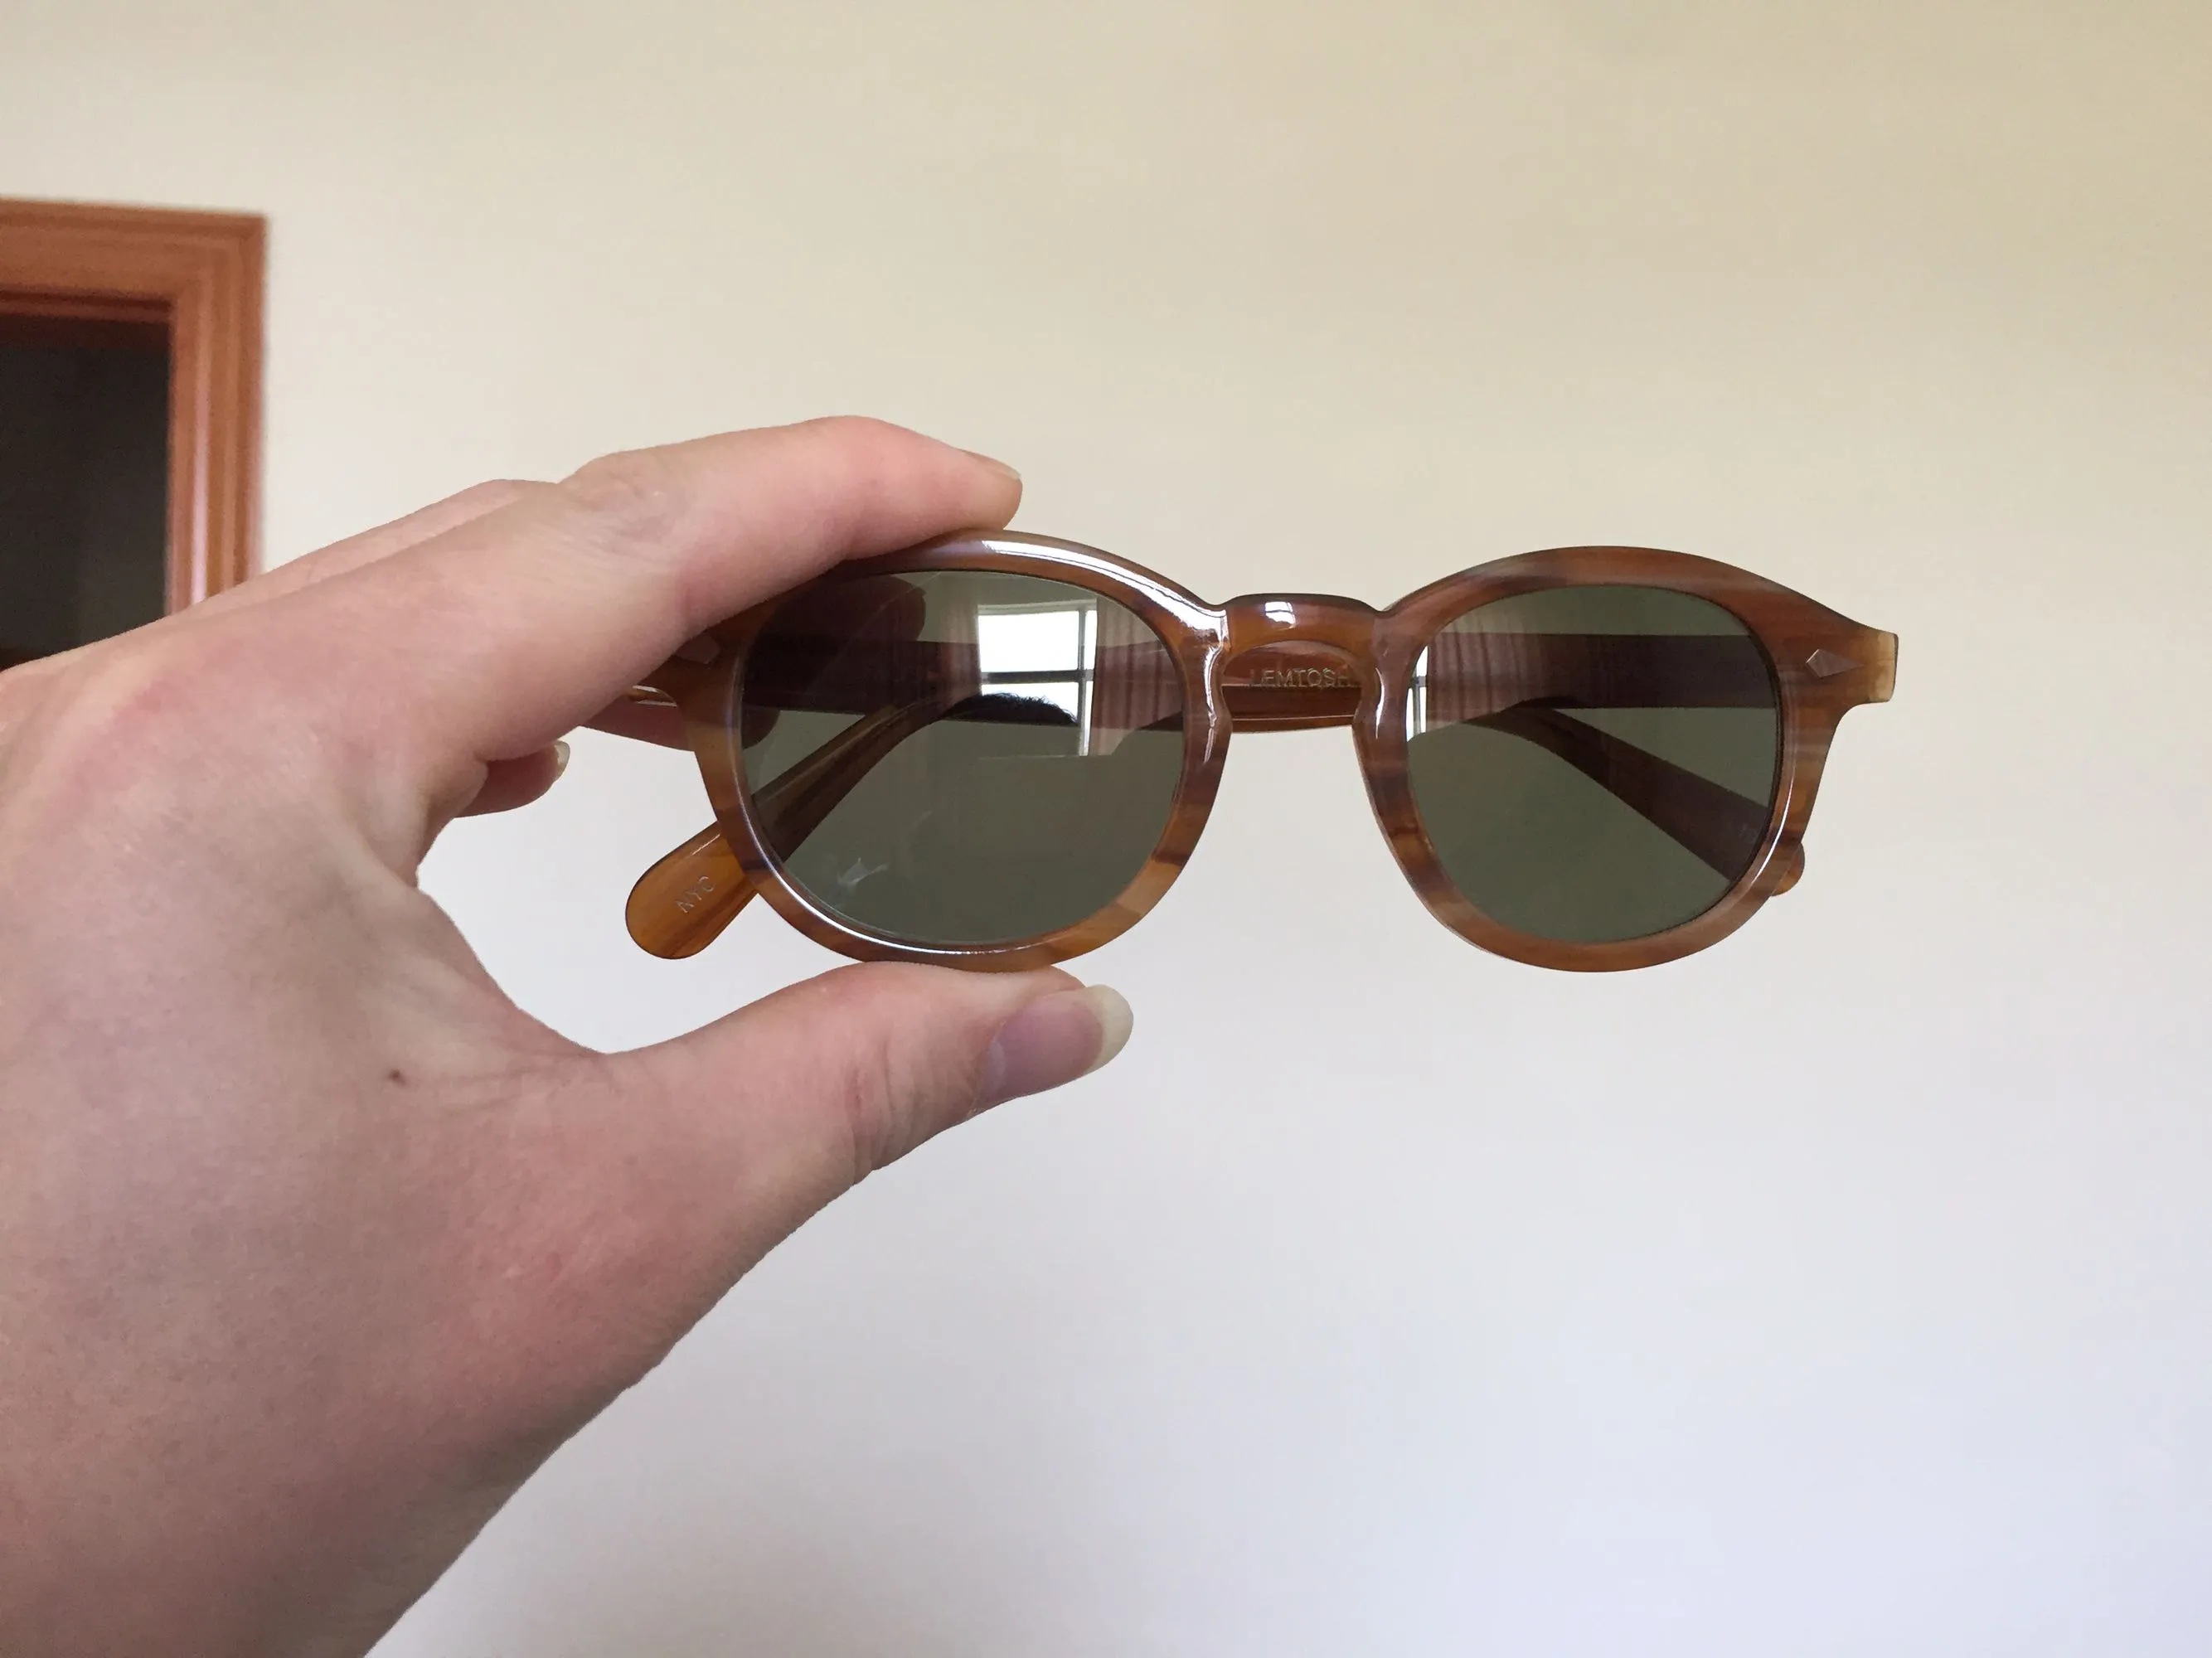 2017 Retro Vintage Johnny Sonnenbrille in Schildpatt und Schwarz mit blauen Gläsern, runde Sonnenbrille für Männer und Frauen, Brillengestell, brandneu, fash271y